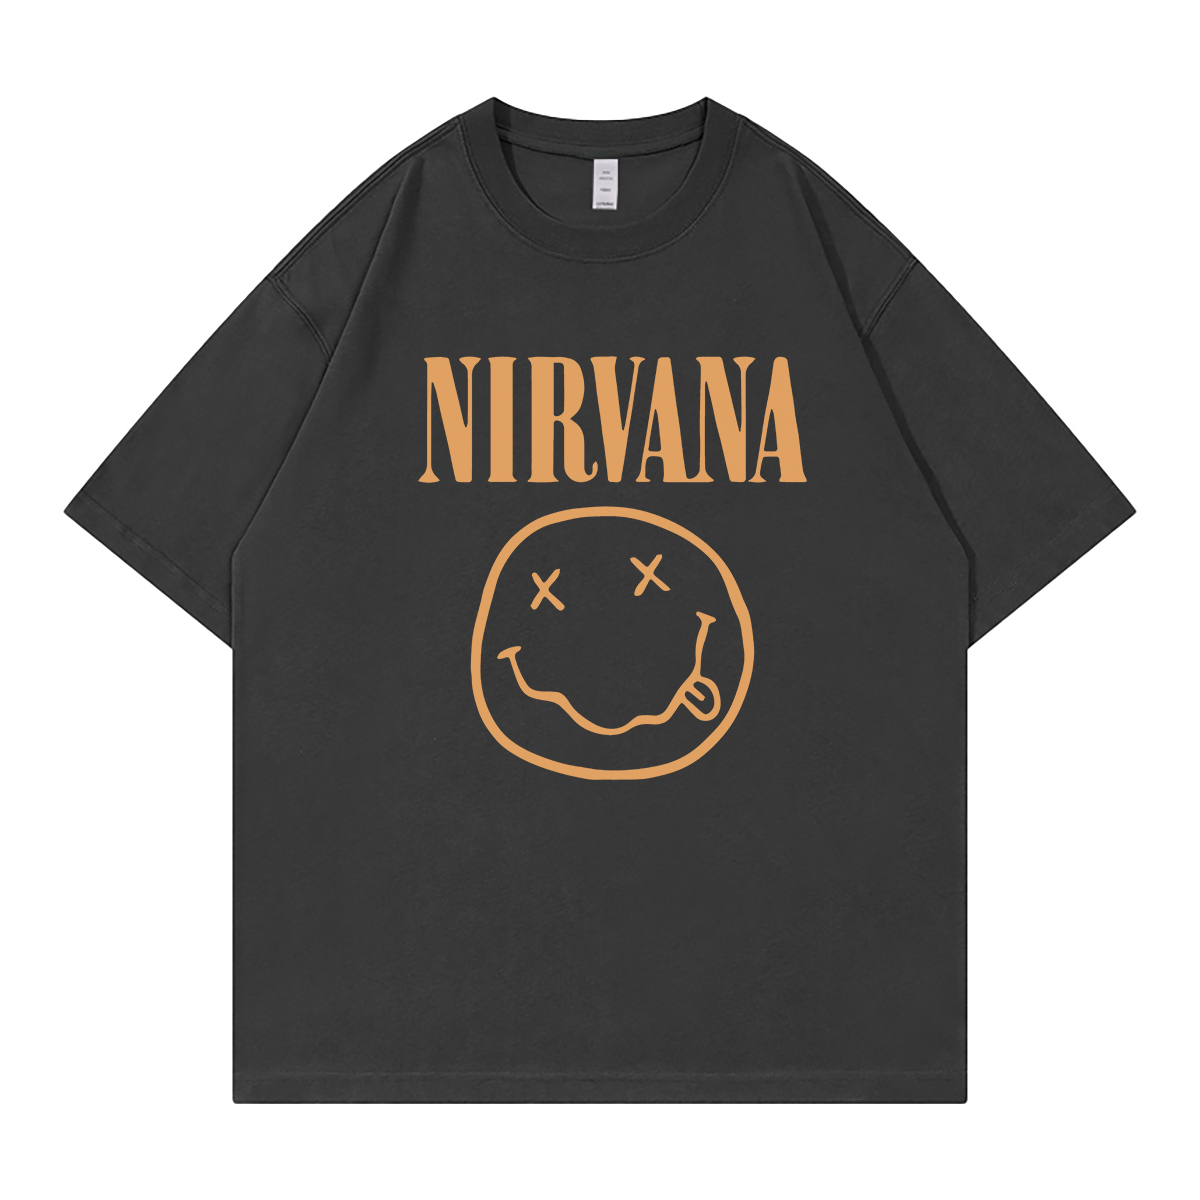 Nirvana涅槃乐队笑脸美式街头休闲落肩宽松纯棉圆领摇滚短袖T恤衫